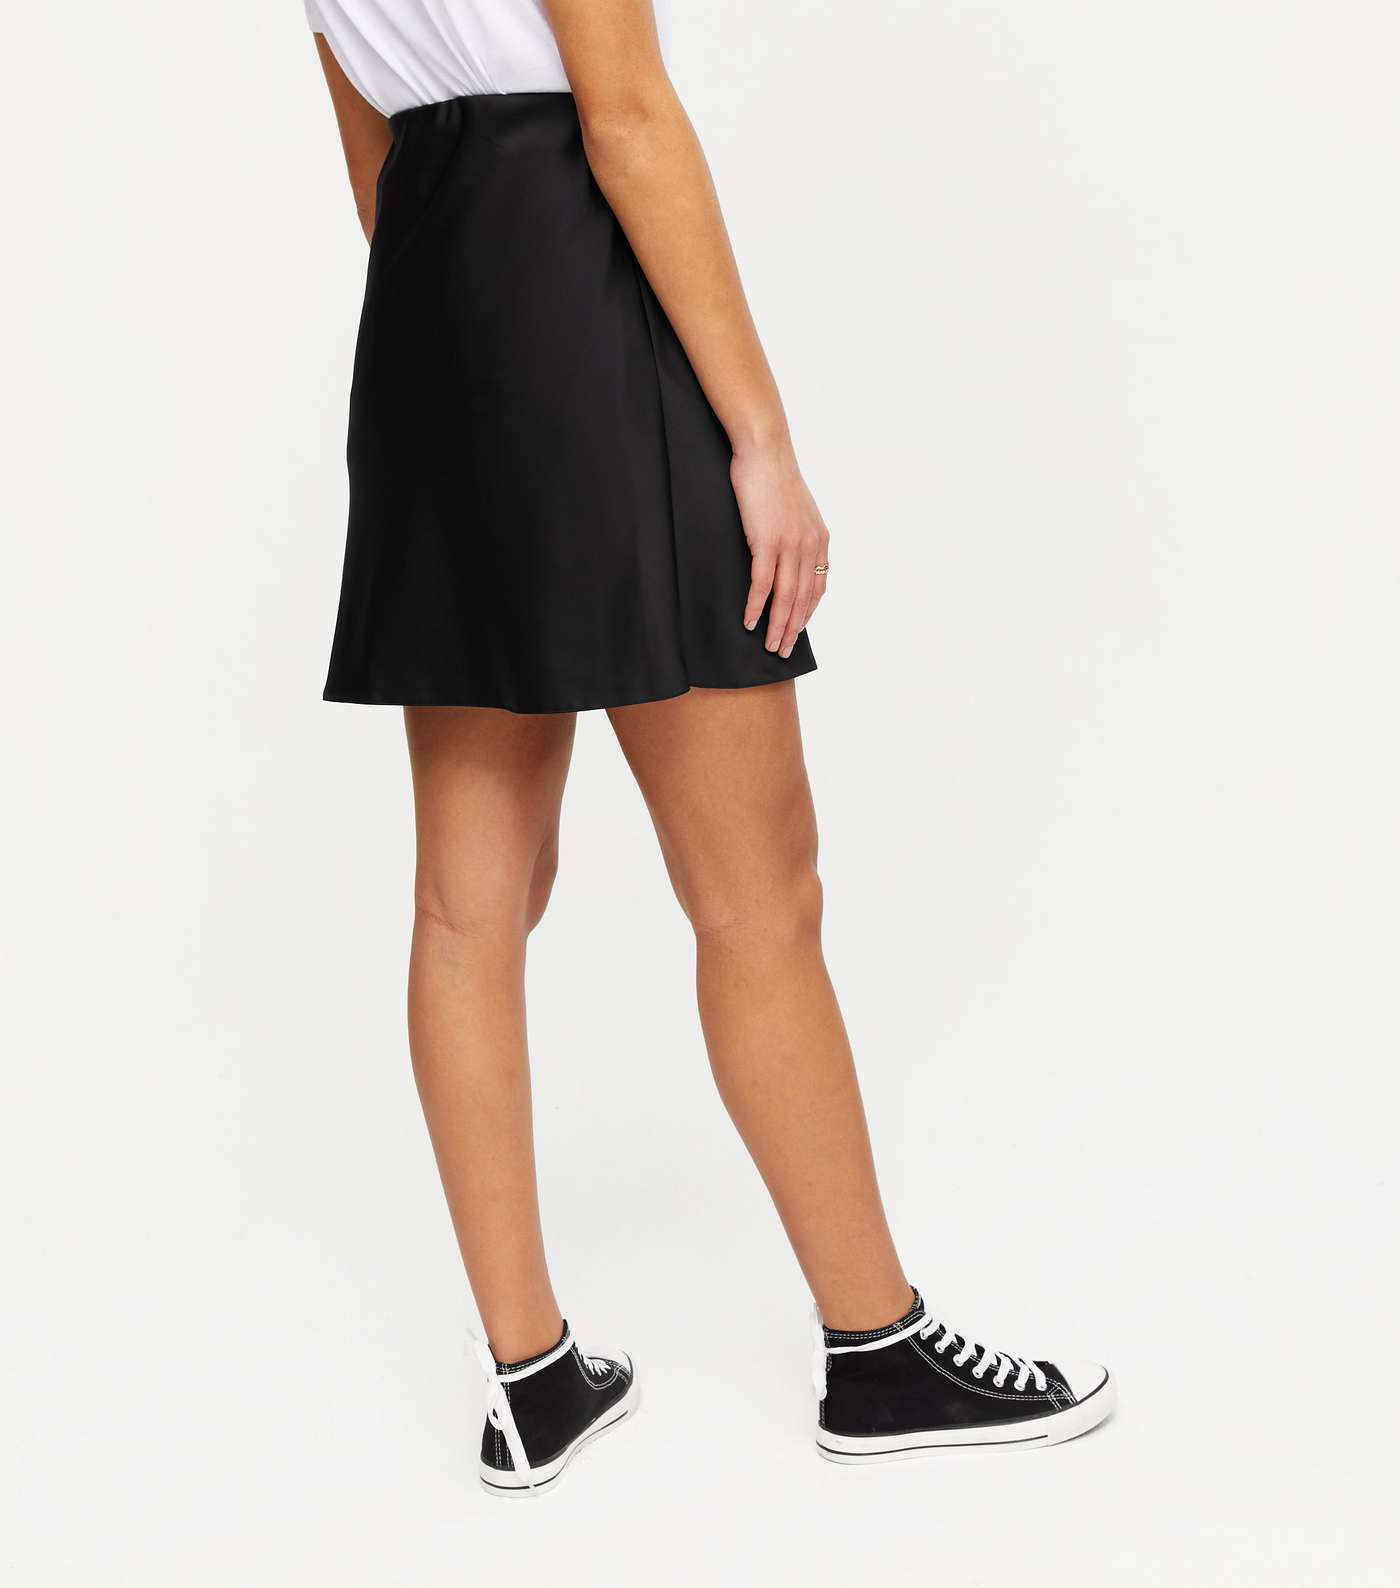 Black Bias Cut Satin Mini Skirt Image 3